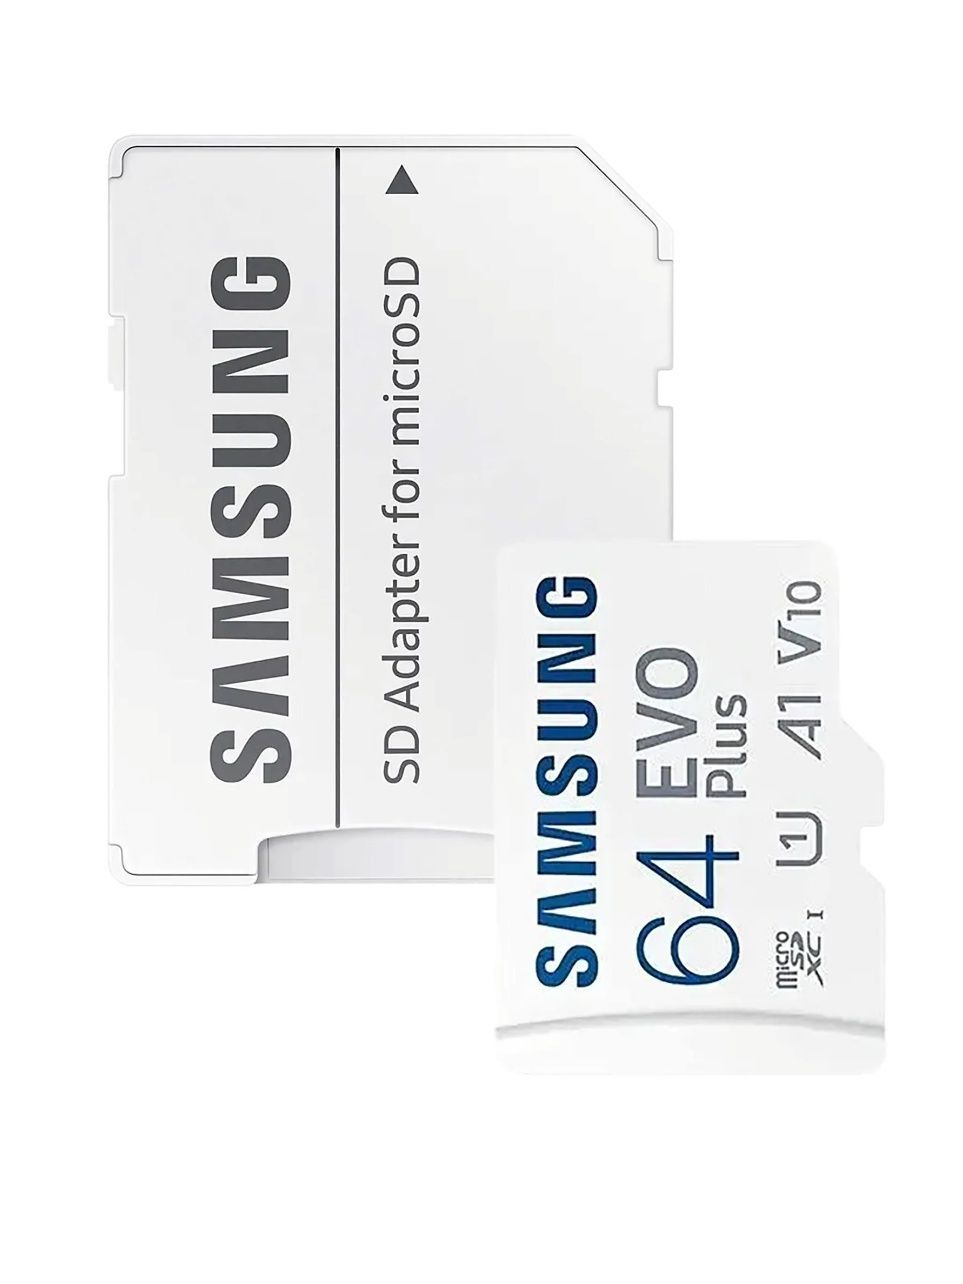 Карта пам'яті Samsung Evo Plus microSDXC 64GB UHS-I U1 V10 A1